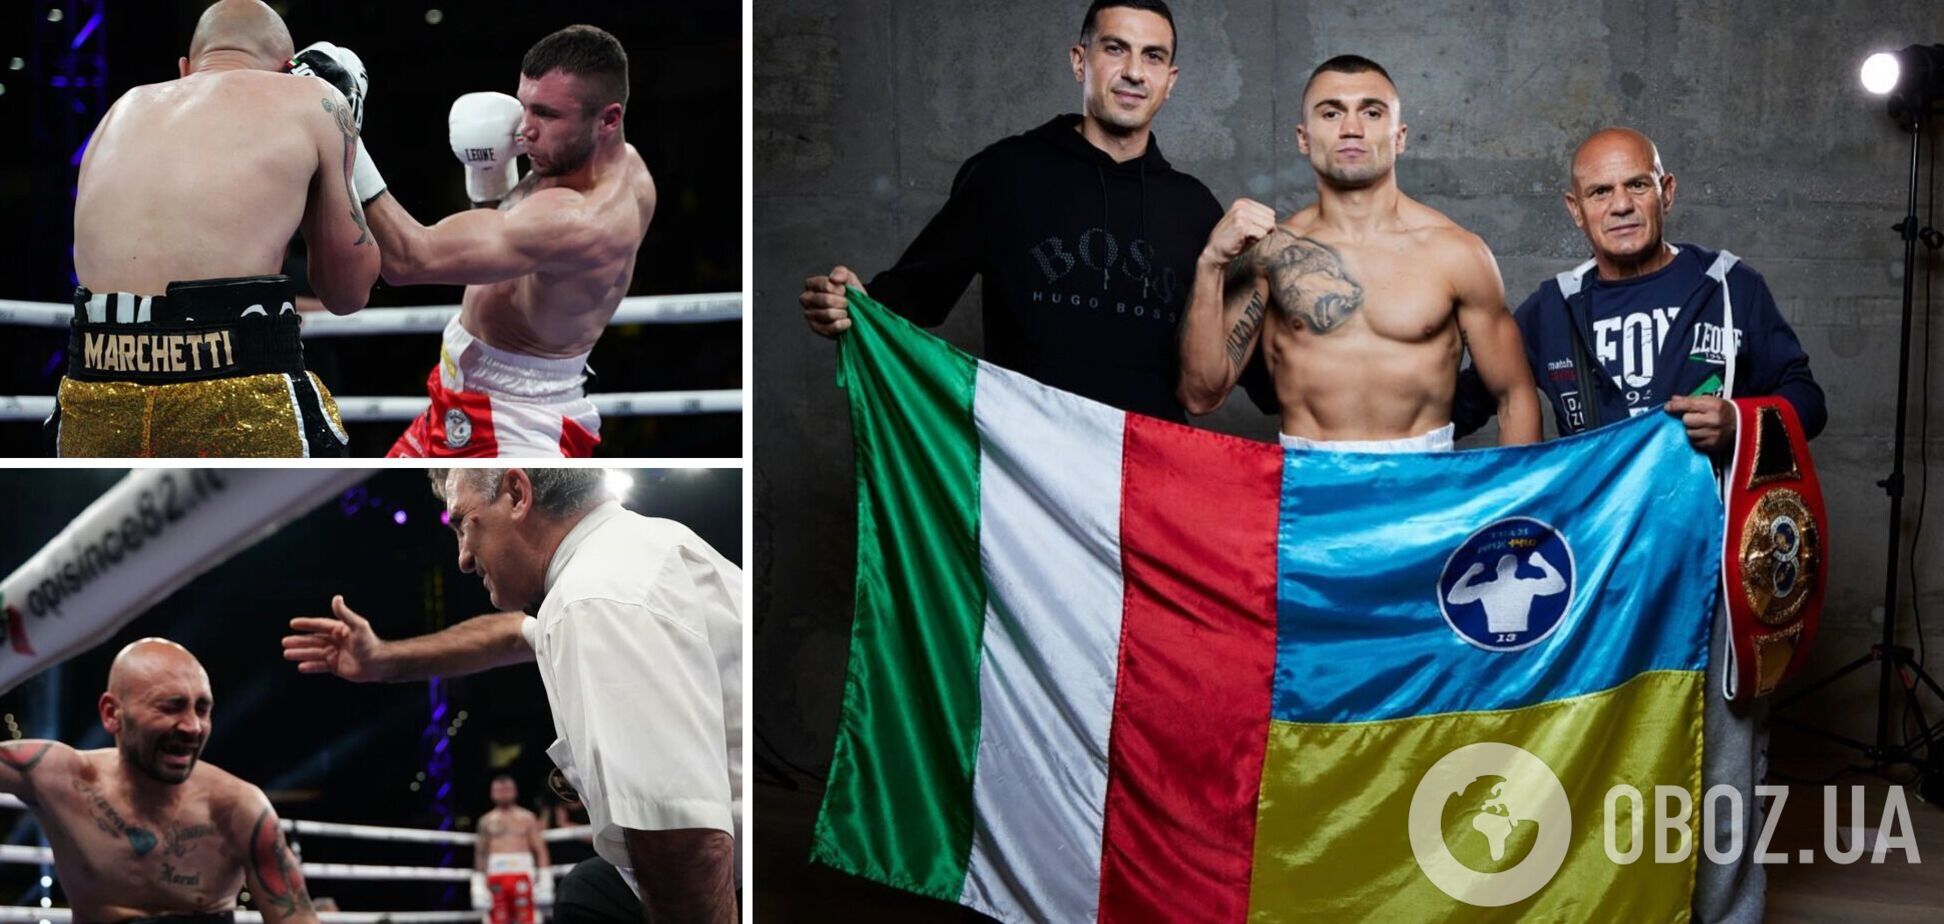 В Італії боксер переміг 'відкладеним' нокаутом та крикнув 'Слава Україні!', станцювавши гопак. Відео